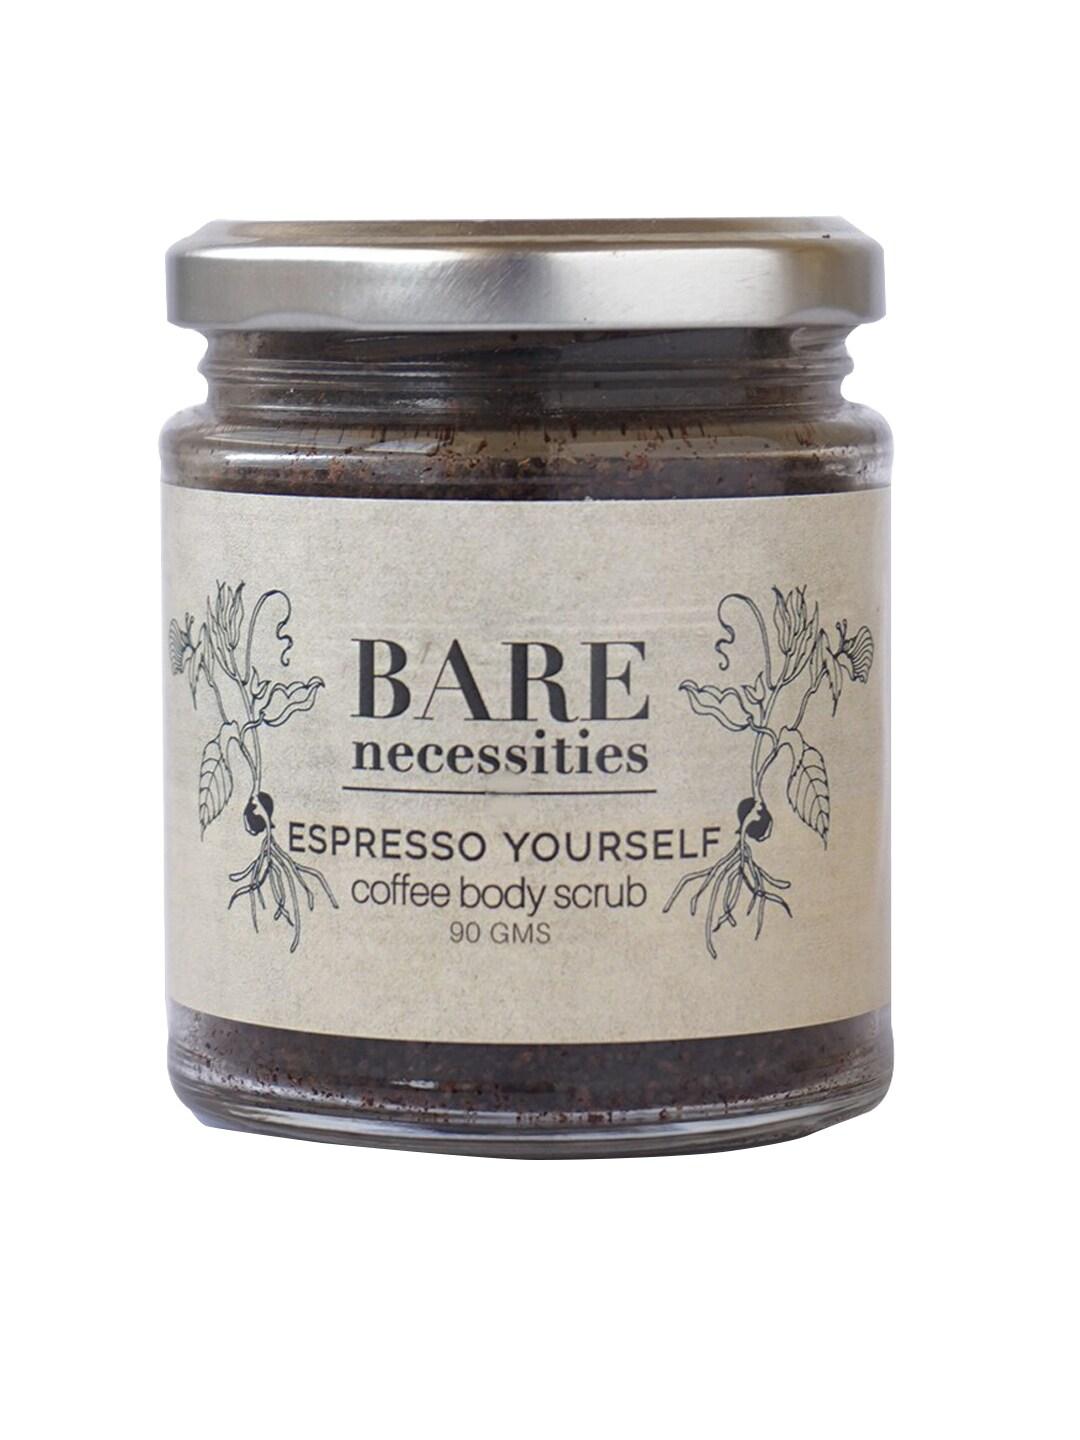 Bare Necessities Espresso Yourself Coffee Body Scrub, 90g